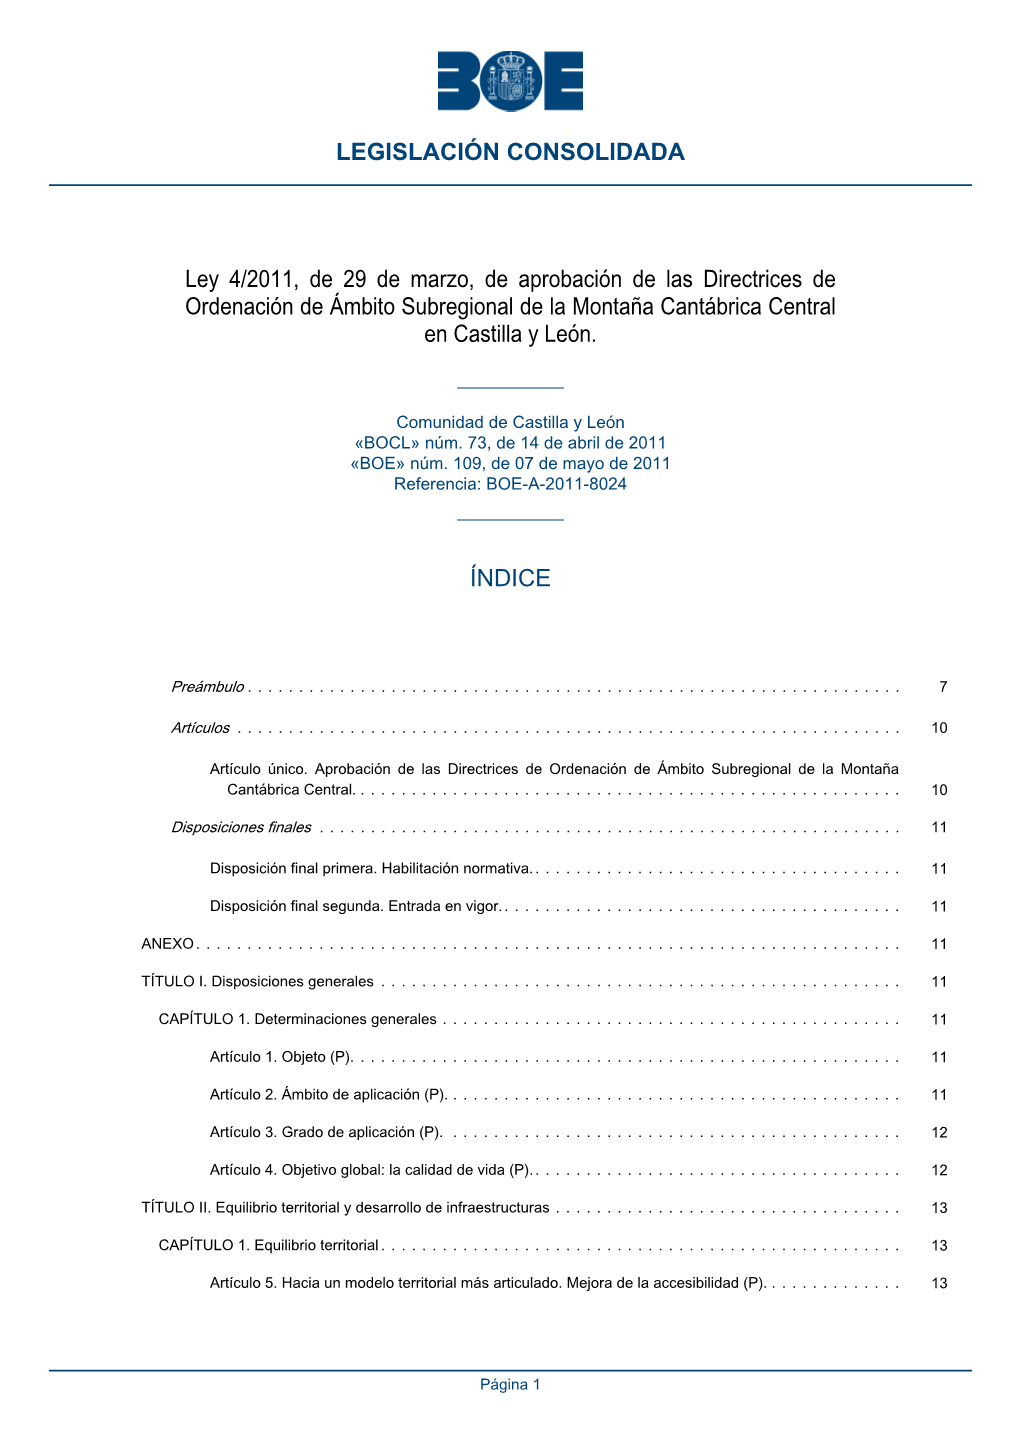 Ley 4/2011, De 29 De Marzo, De Aprobación De Las Directrices De Ordenación De Ámbito Subregional De La Montaña Cantábrica Central En Castilla Y León